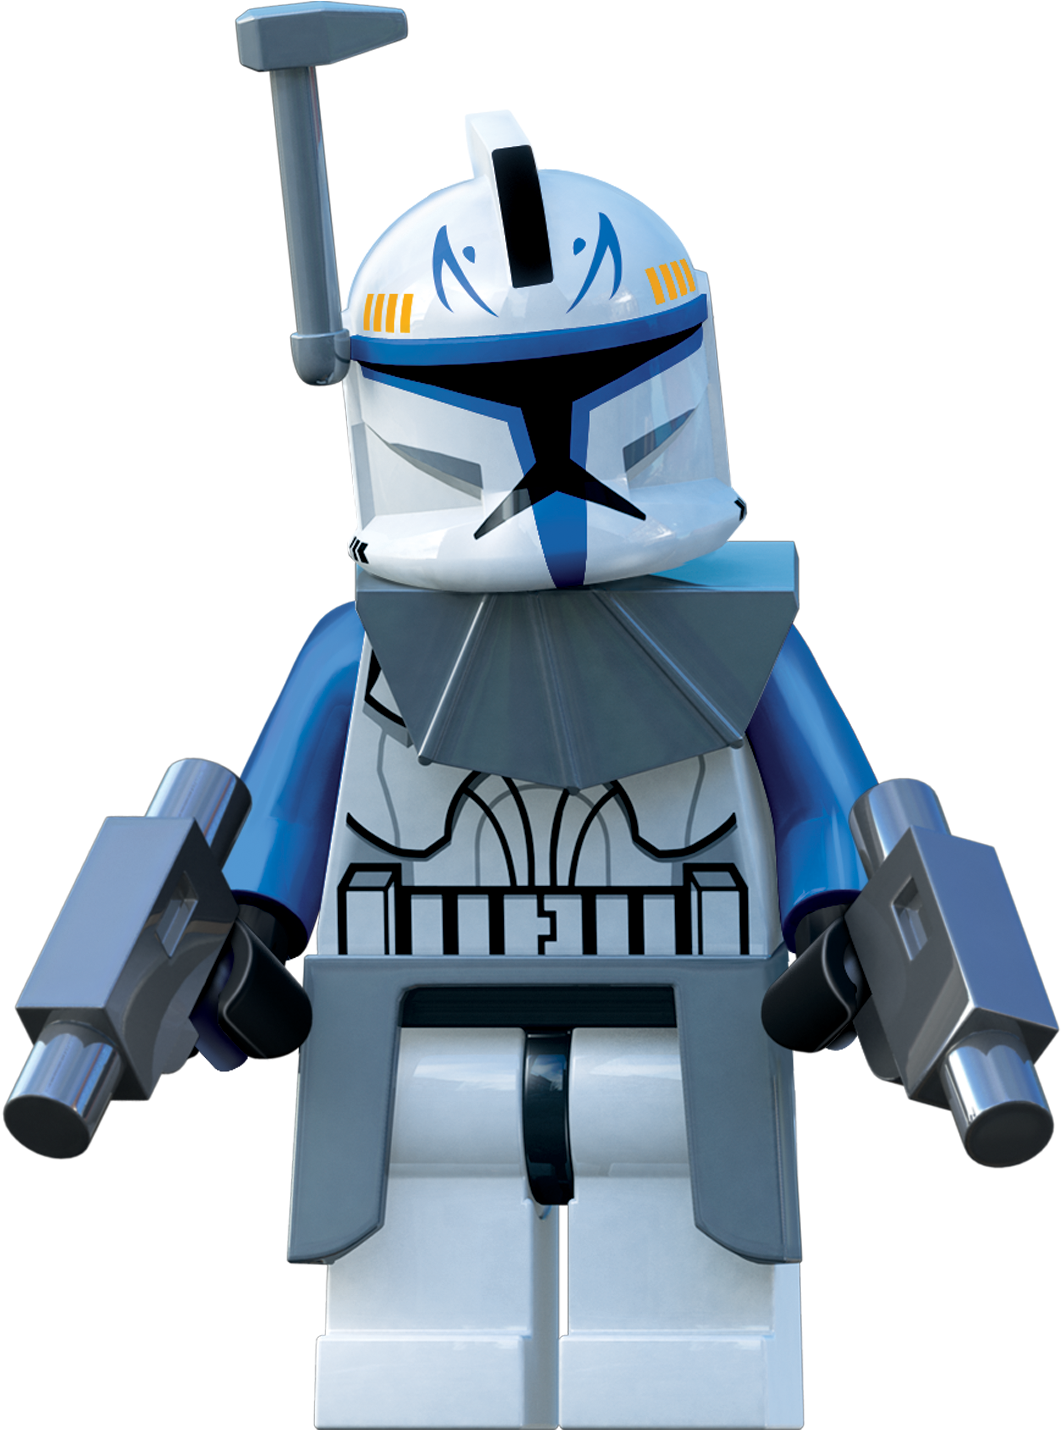 Image Rex Lsw3 Png Wookieepedia Fandom Powered By Wikia - Lego Star Wars 3 (1120x1465)